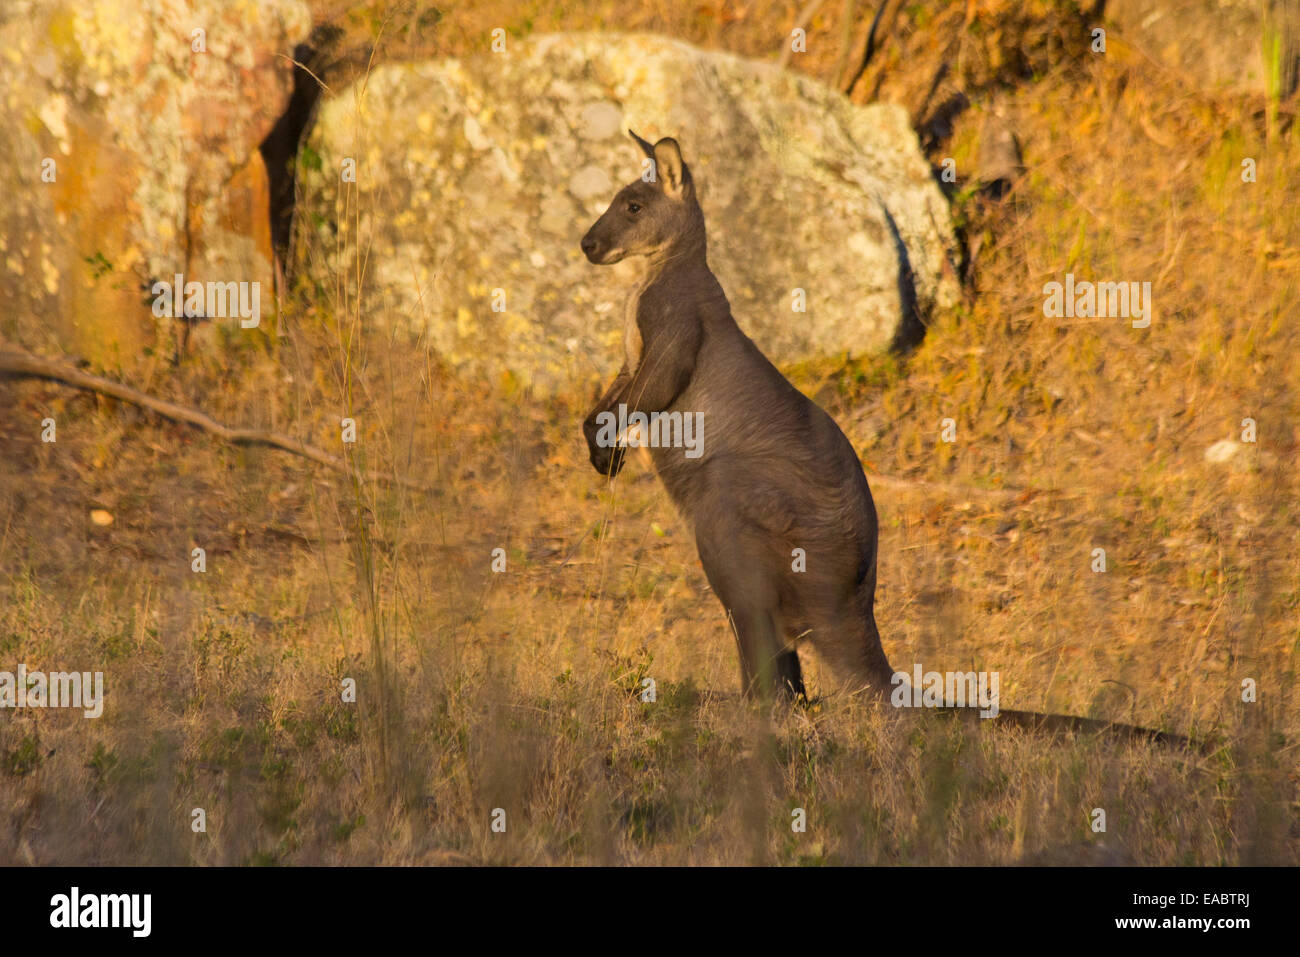 Common Wallaroo (Macropus robustus), Capertee Valley, NSW, Australia Stock Photo